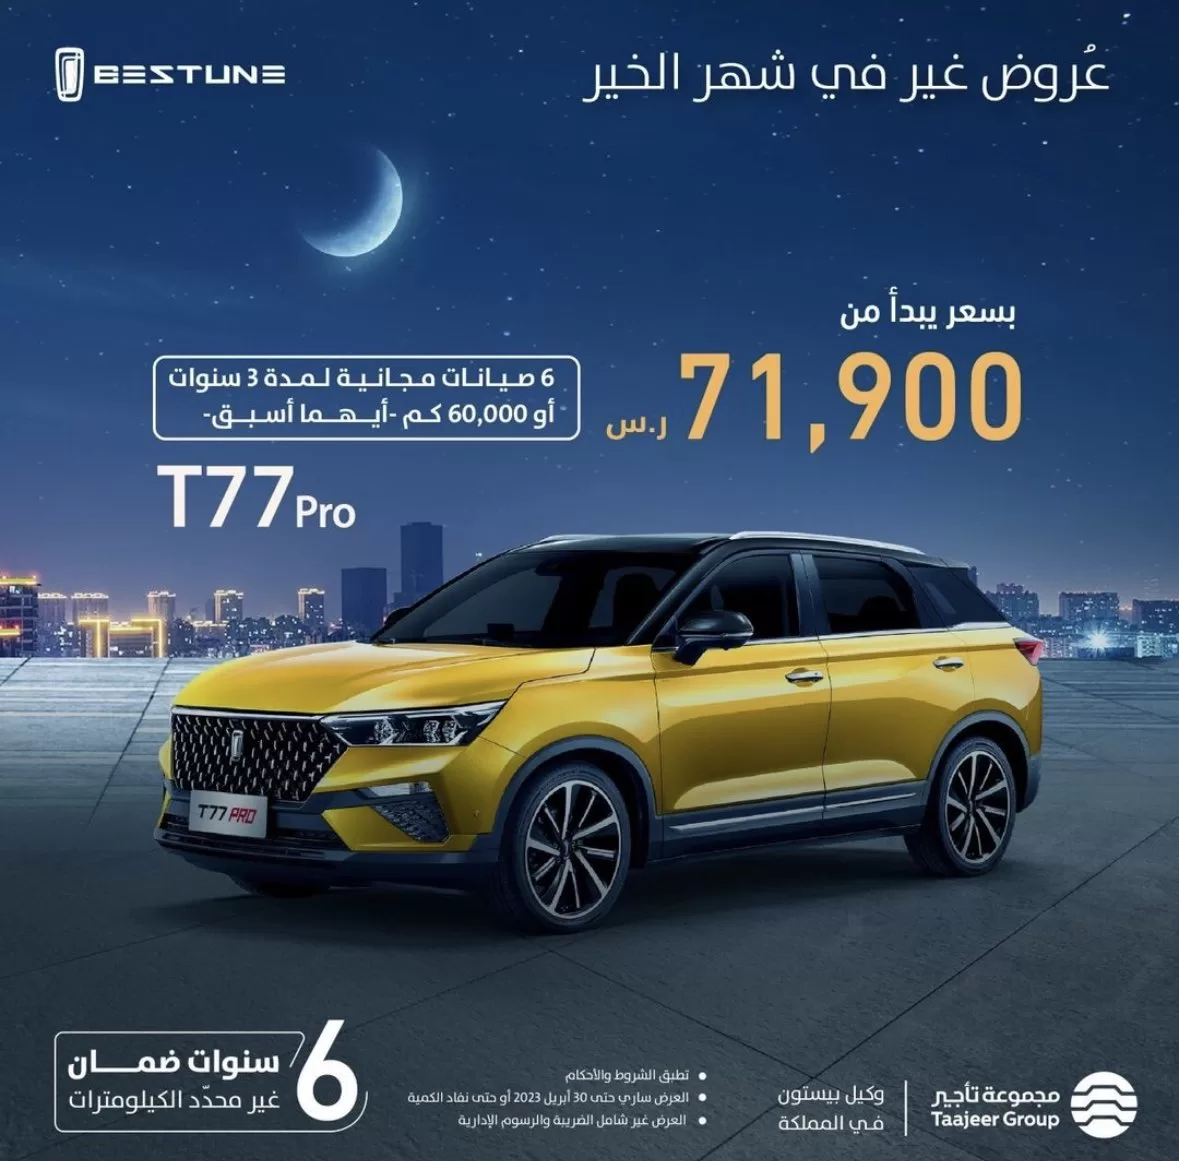 FsU3IBxWIBQd9e2 1 jpg - عروض السيارات رمضان 2023 : عروض بيستون السعودية علي موديلات متنوعة